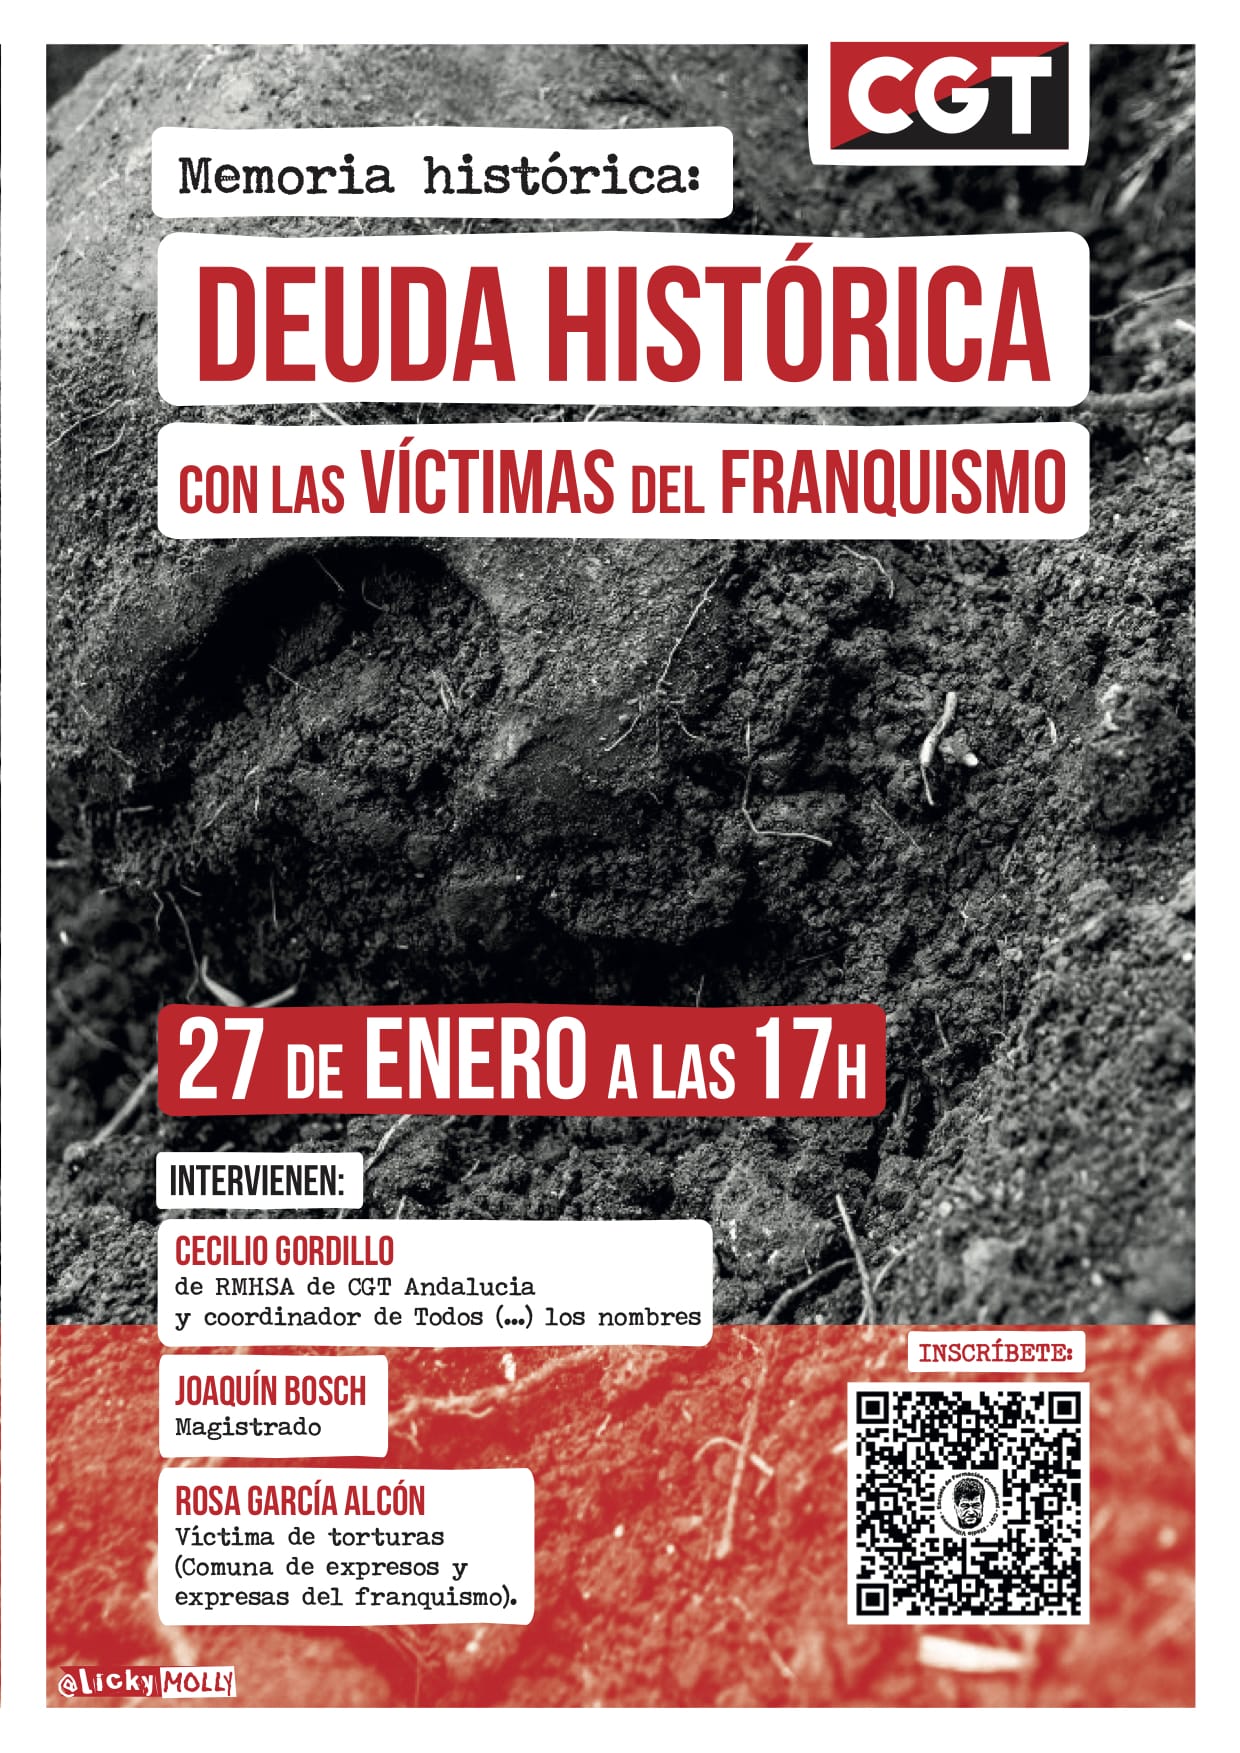 Memoria histórica: Deuda histórica con las víctimas del Franquismo